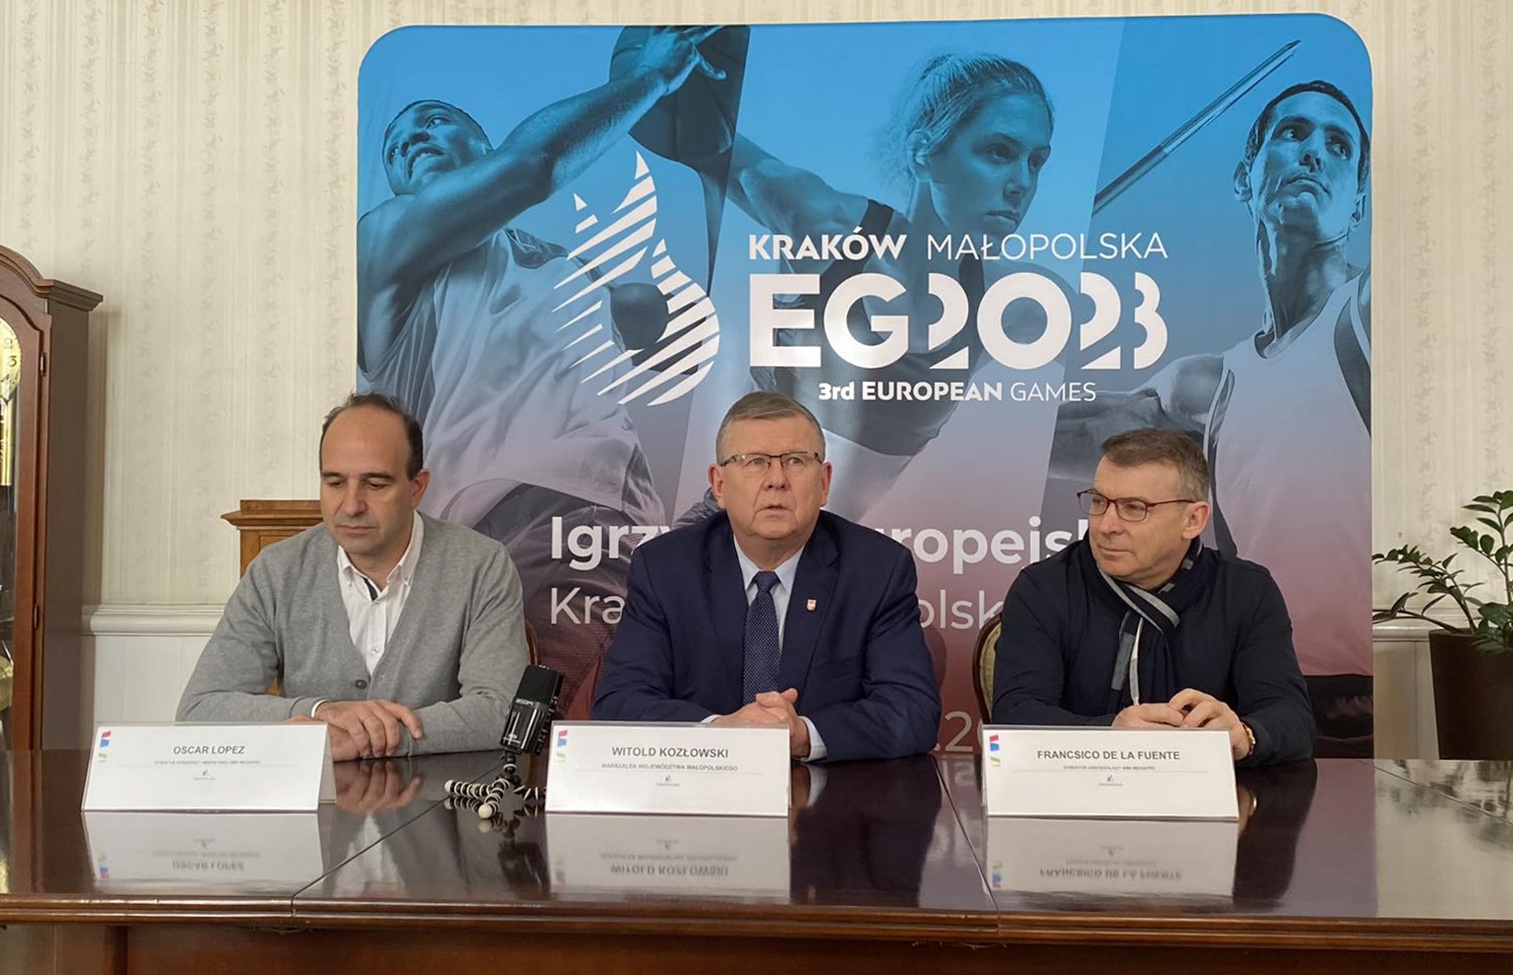 Igrzyska okiem kamery, uznana firma produkcyjna chwali Małopolskę